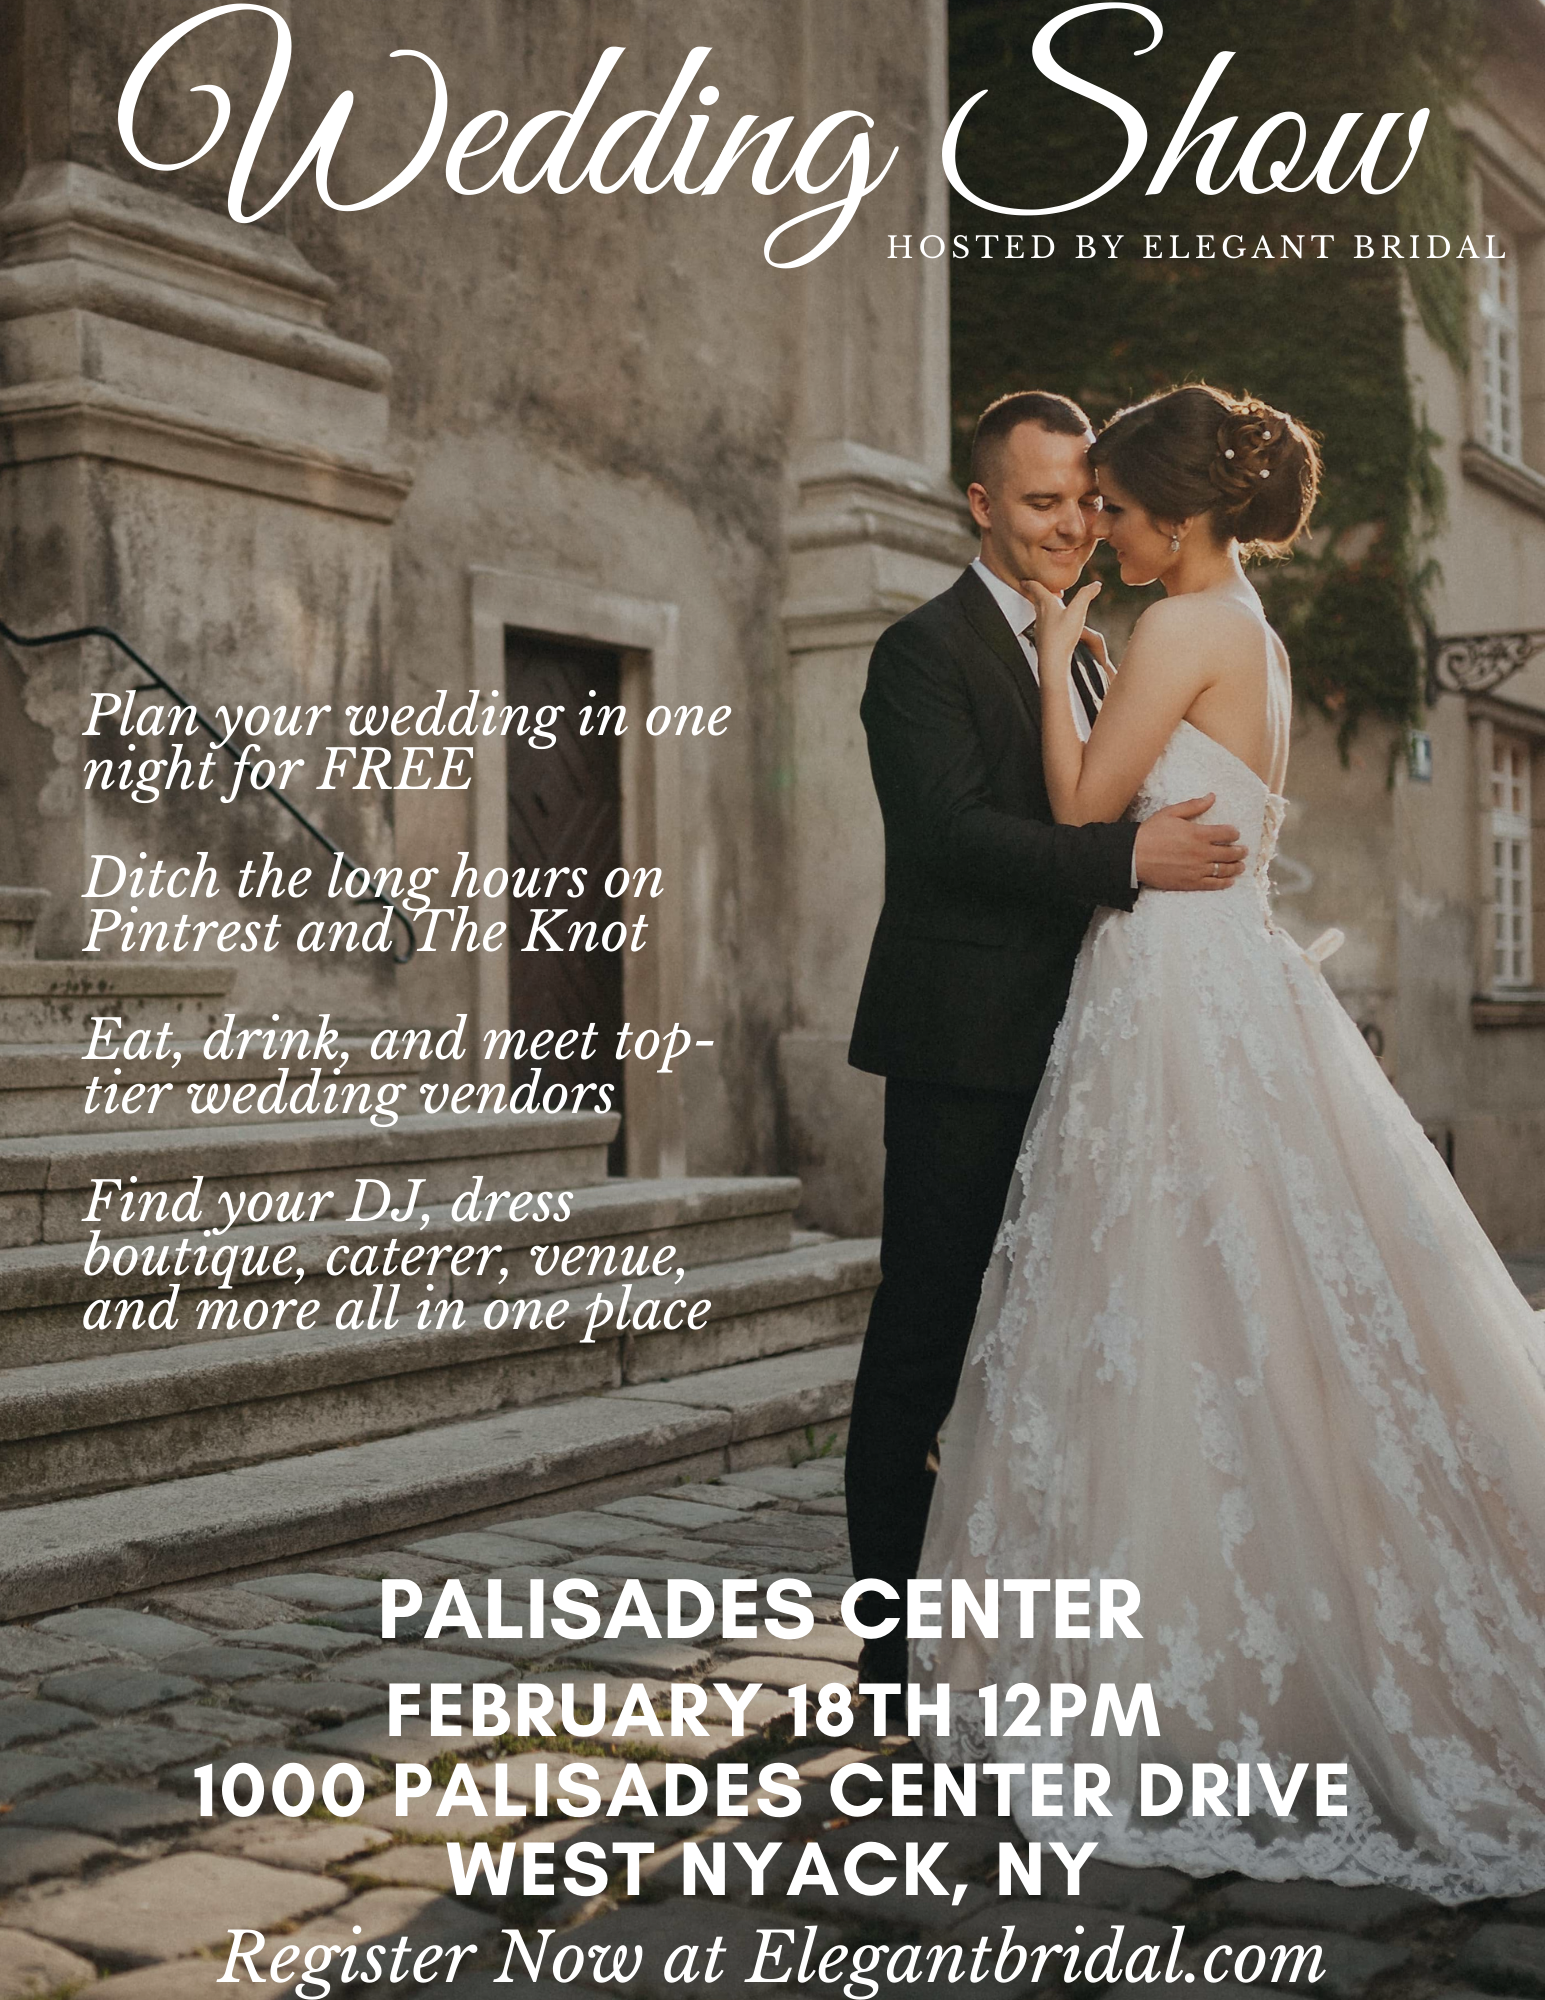 Palisades Center bridal